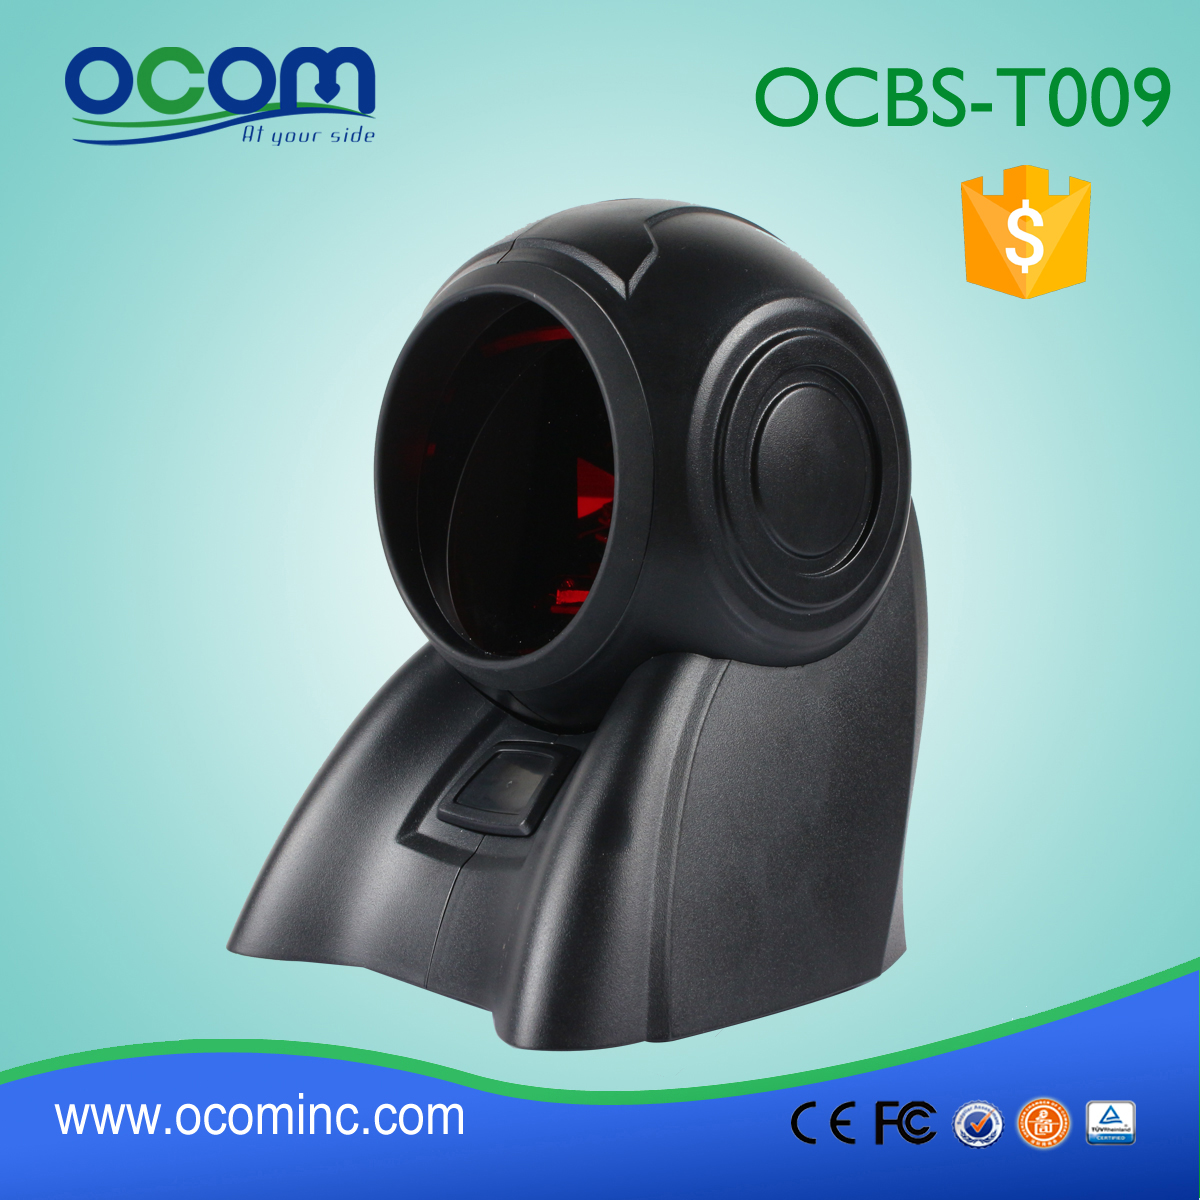 υψηλής ποιότητας omni-directional αναγνώστη barcode, omni barcode scanner όπλο